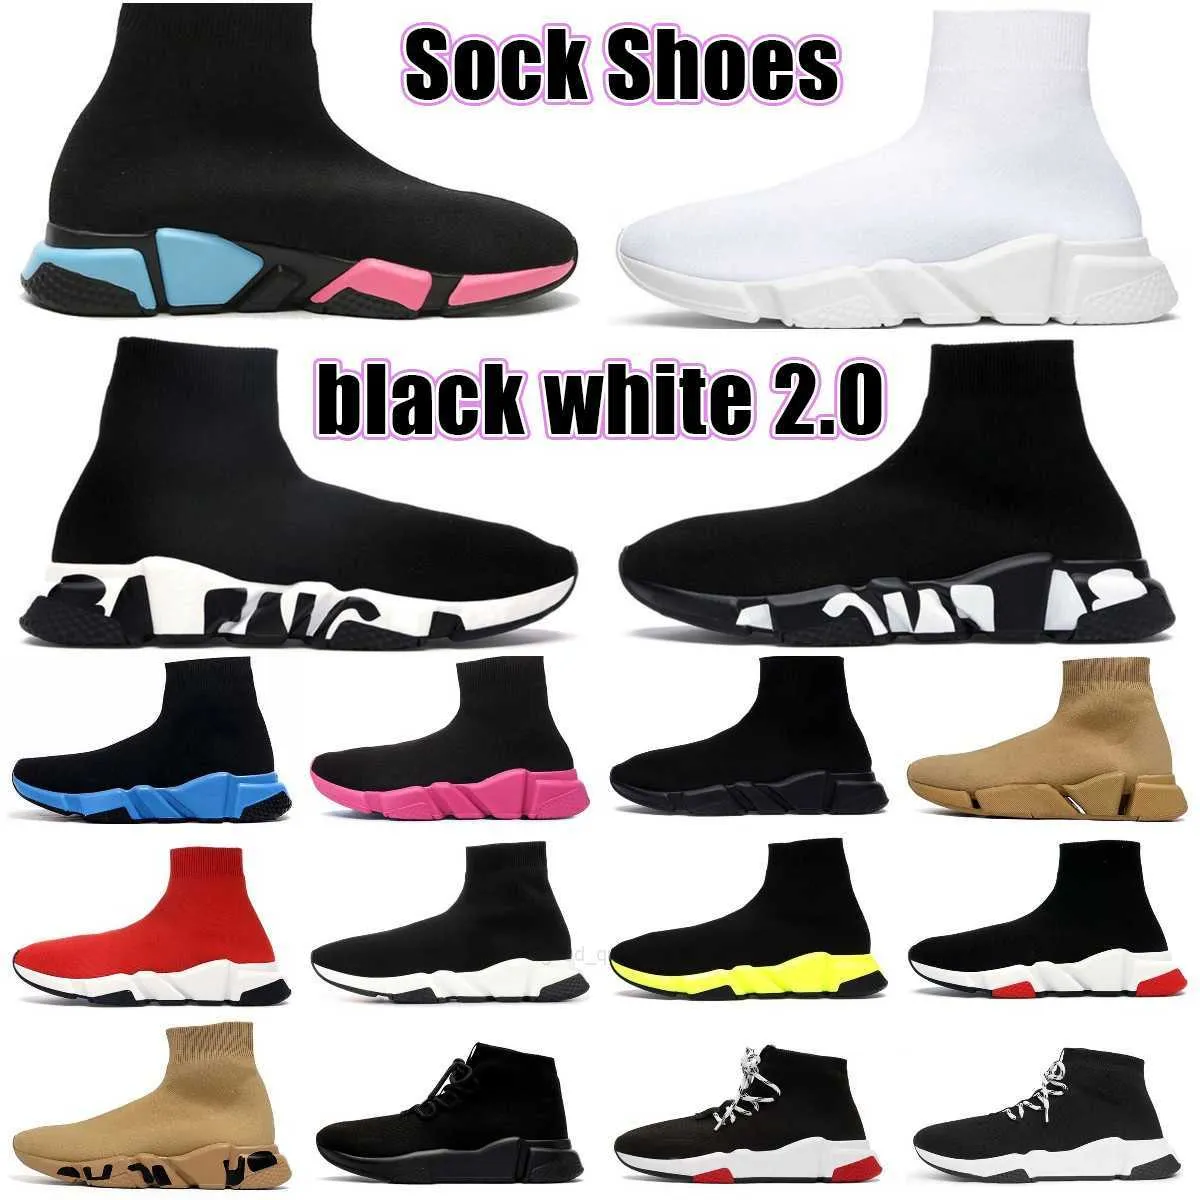 Çorap Ayakkabı kadın ayakkabısı kadın spor ayakkabı erkek ayakkabısı 2.0 1.0 Üçlü Siyah Beyaz S Kırmızı Bej Çorap Eğitmenler Erkek Kadın Örgü Çizmeler Ayak Bileği Patik Platform Ayakkabı Eğitmenler